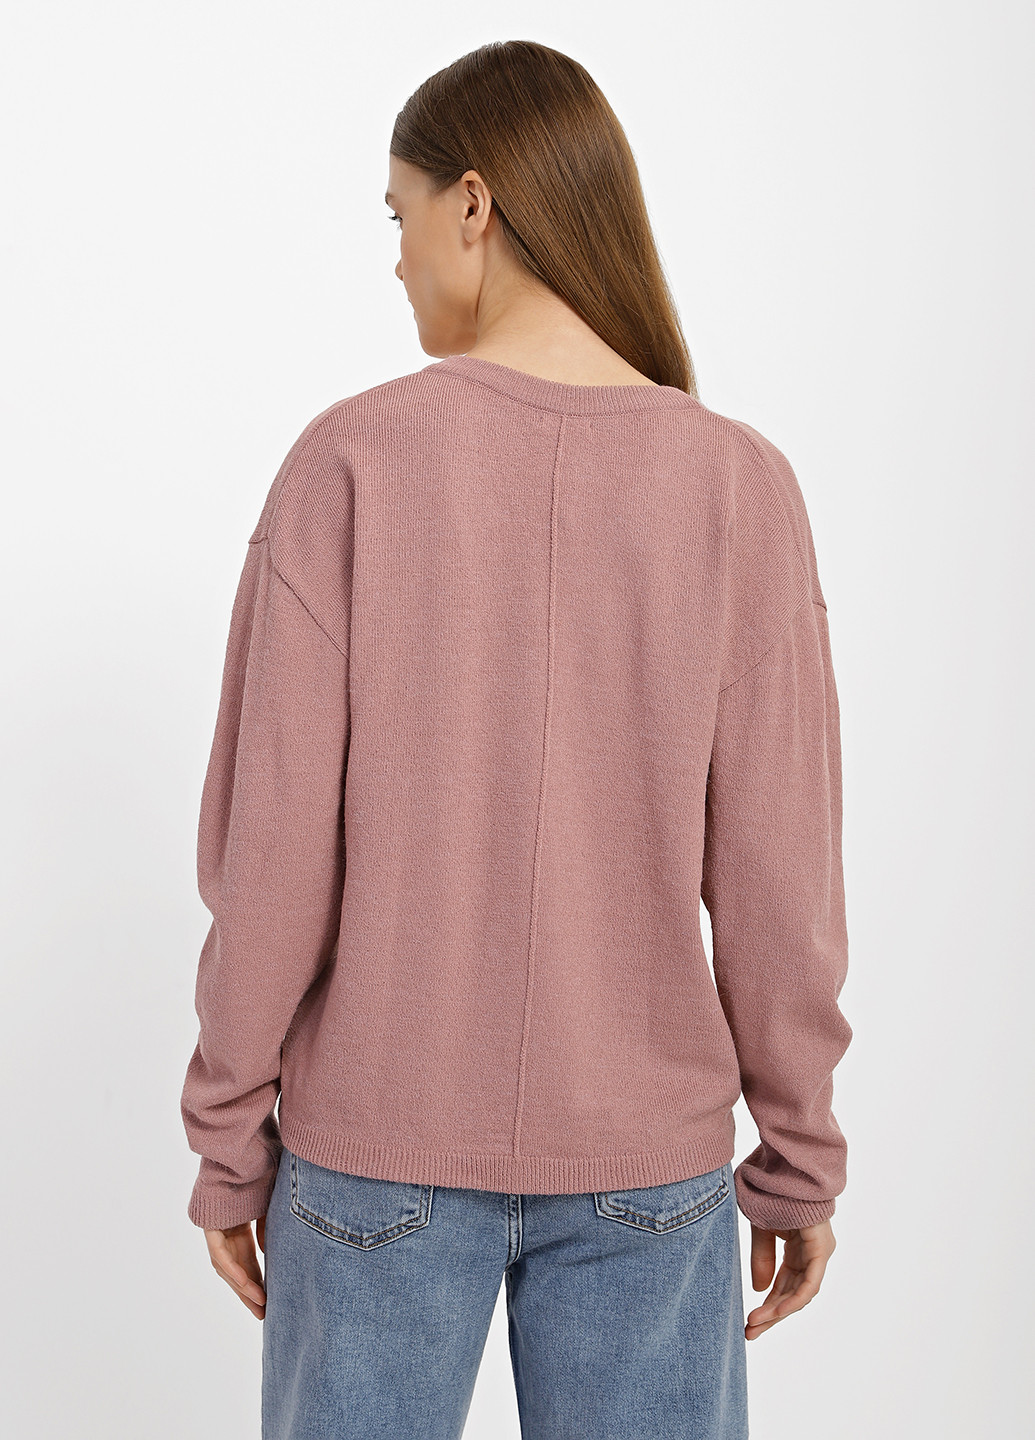 Пудровий демісезонний пуловер пуловер Sewel